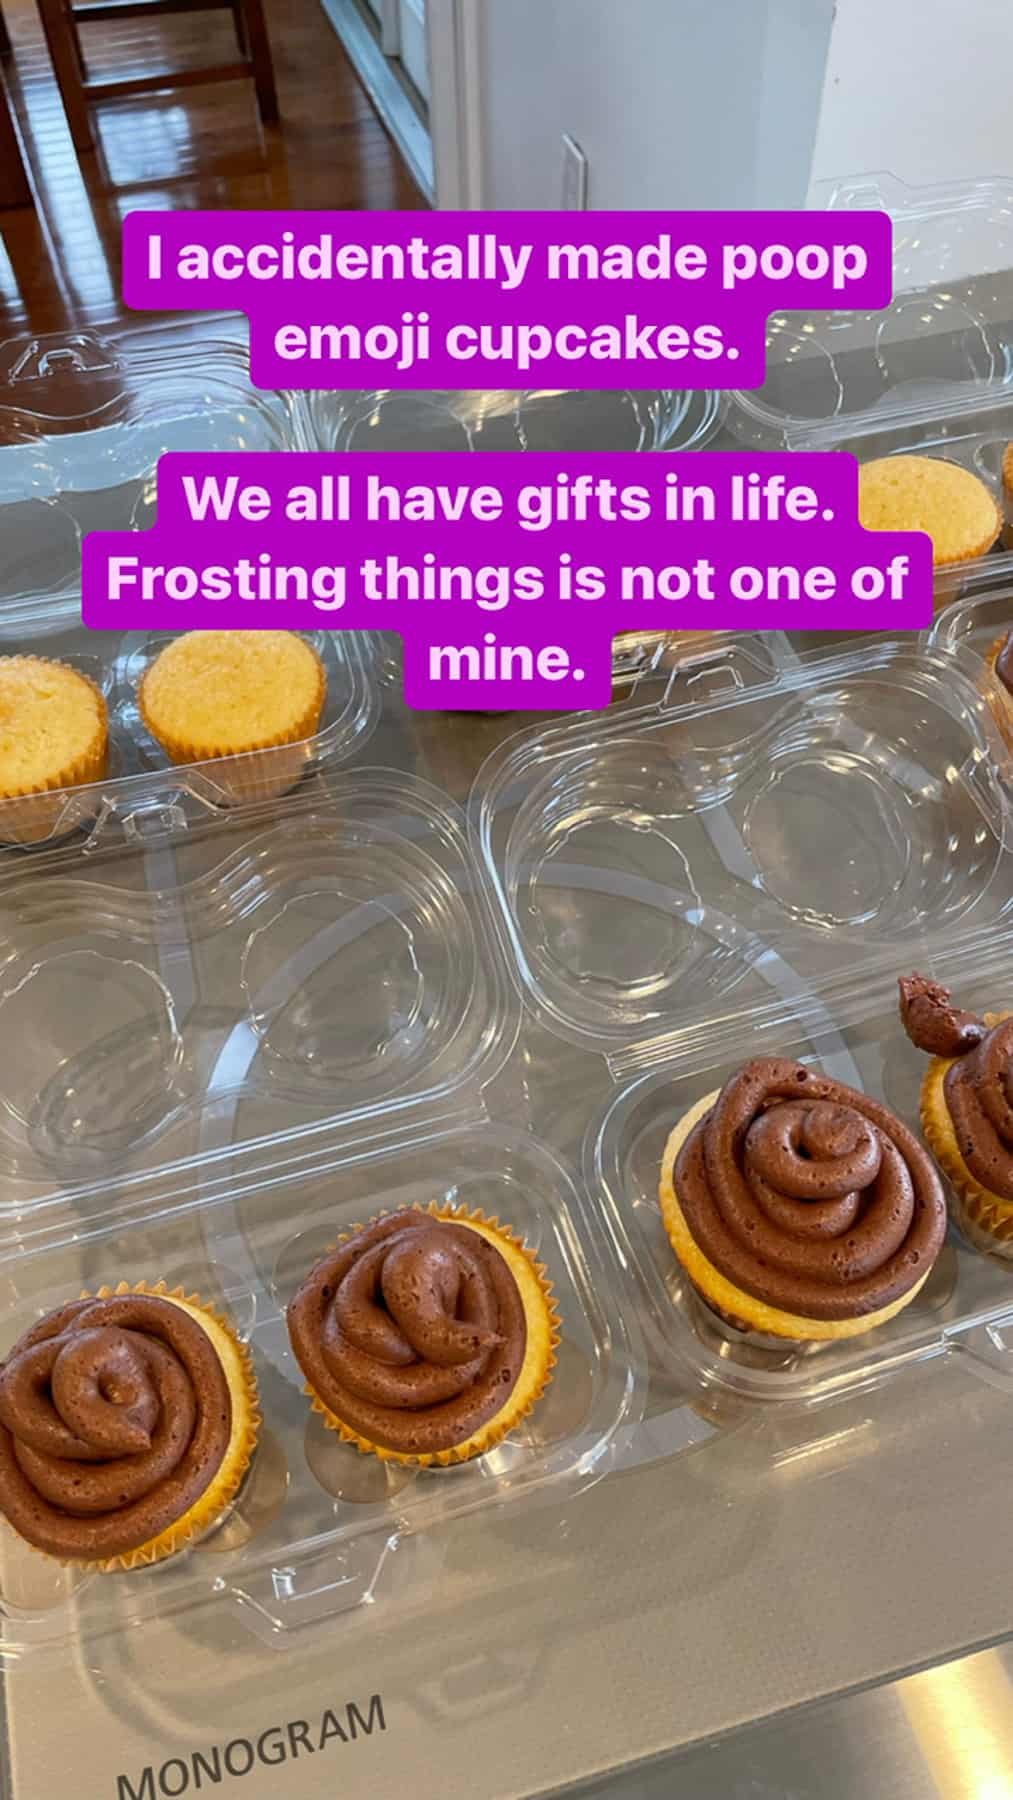 cupcakes that look like poop emoji